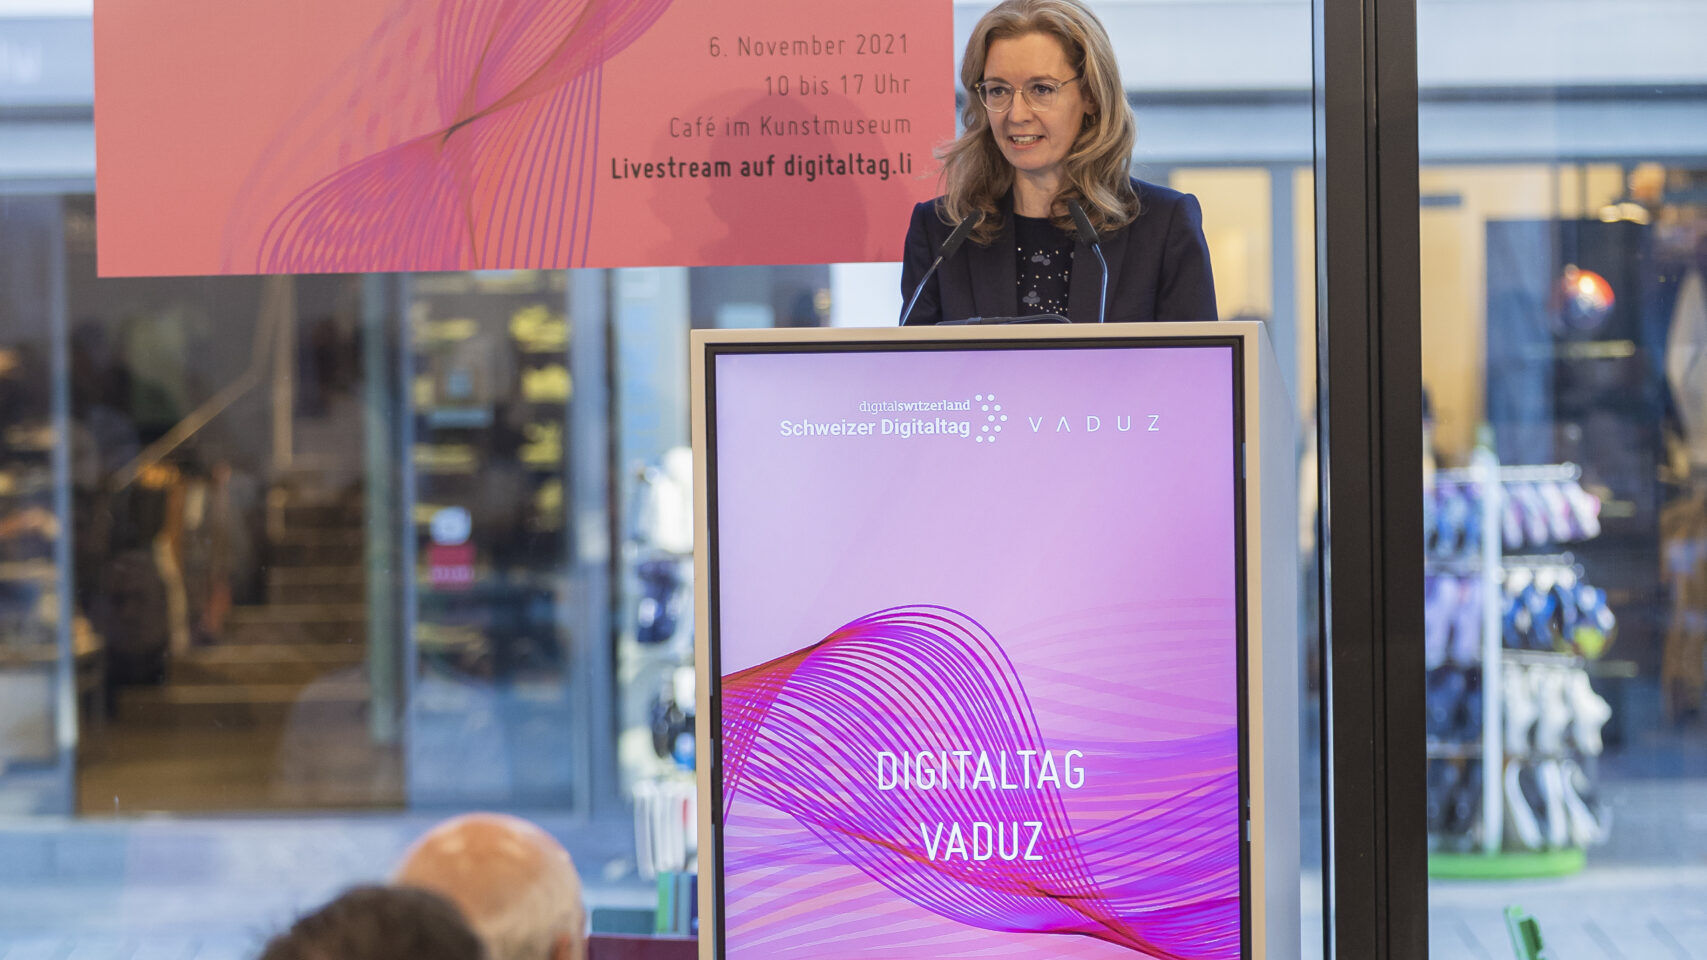 «Digitaltag Vaduz», приветствовавшийся Художественным музеем столицы Княжества Лихтенштейн в субботу, 6 ноября 2021 г., вызвал энтузиазм публики и выступающих по аналогии с «Швейцарским цифровым днем» следующего дня 10: вмешательство заместитель премьер-министра Сабина Мунани